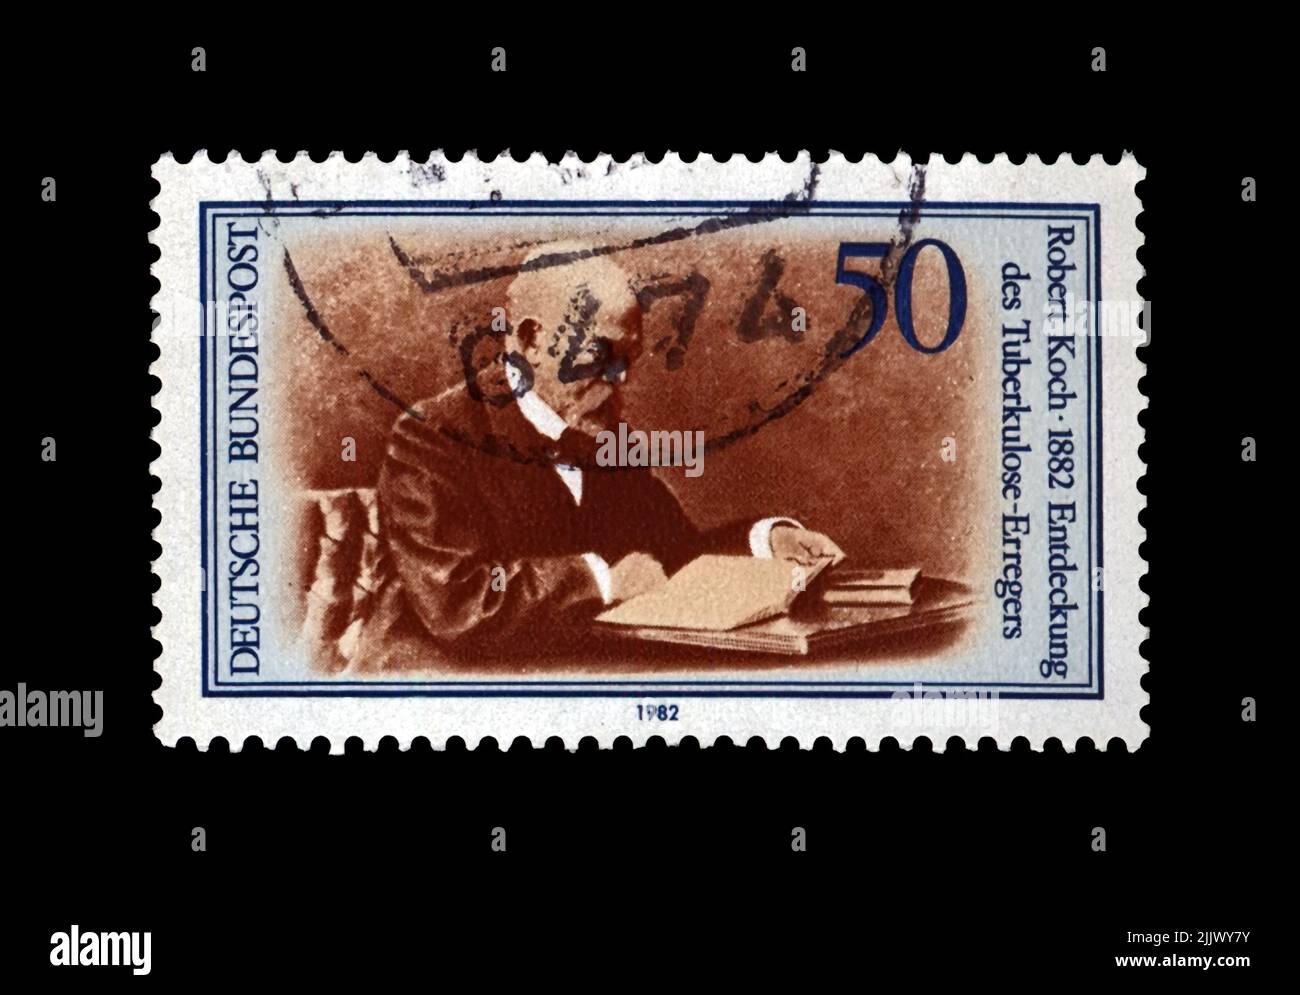 Robert Koch (1843-1910), chercheur en tuberculose, explorateur, découvreur du bacille de la tuberculose, vers 1982. Timbre postal d'époque de l'Allemagne isolé Banque D'Images